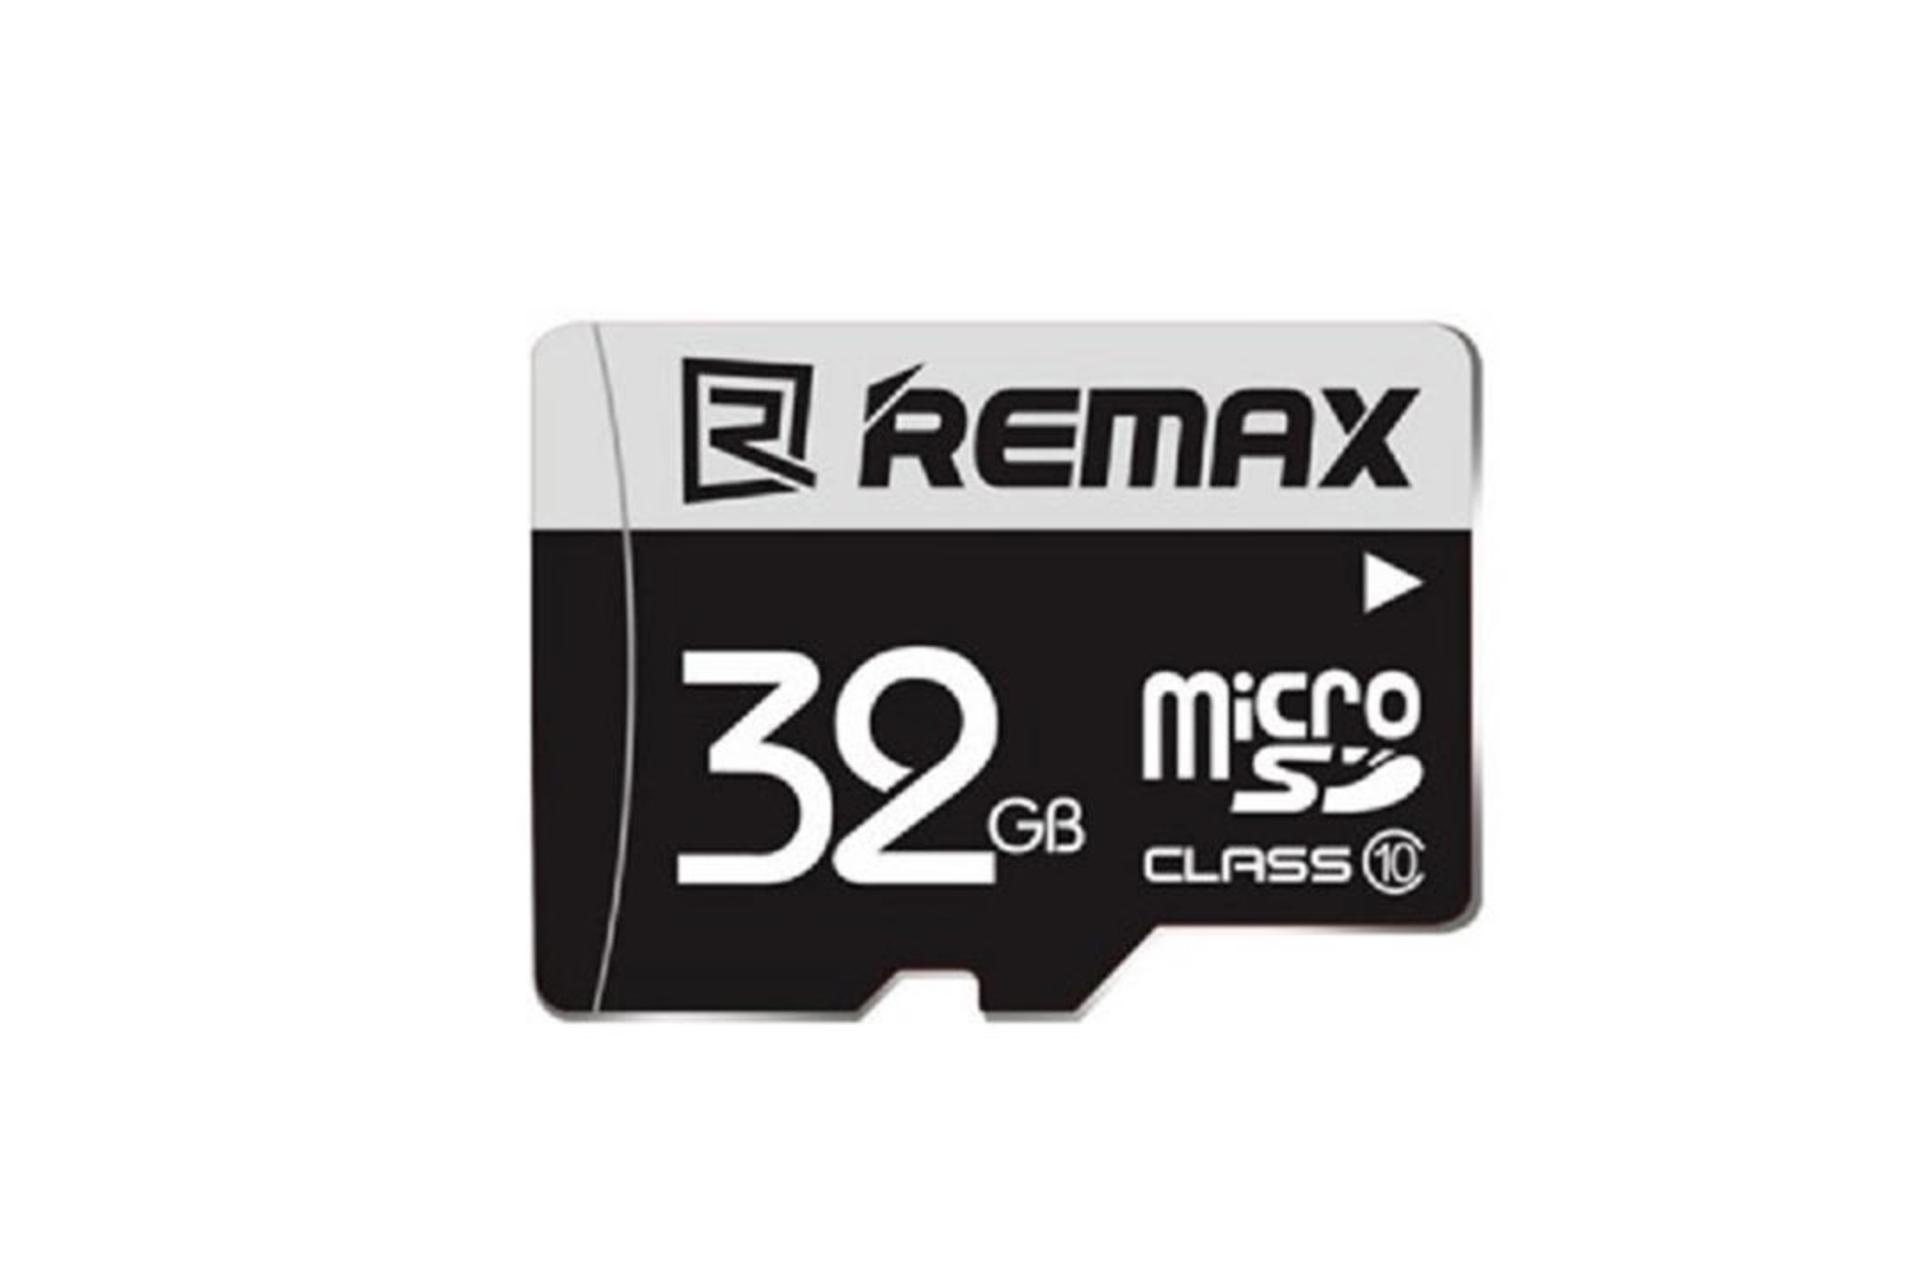 Remax microSDHC Class 10 32GB